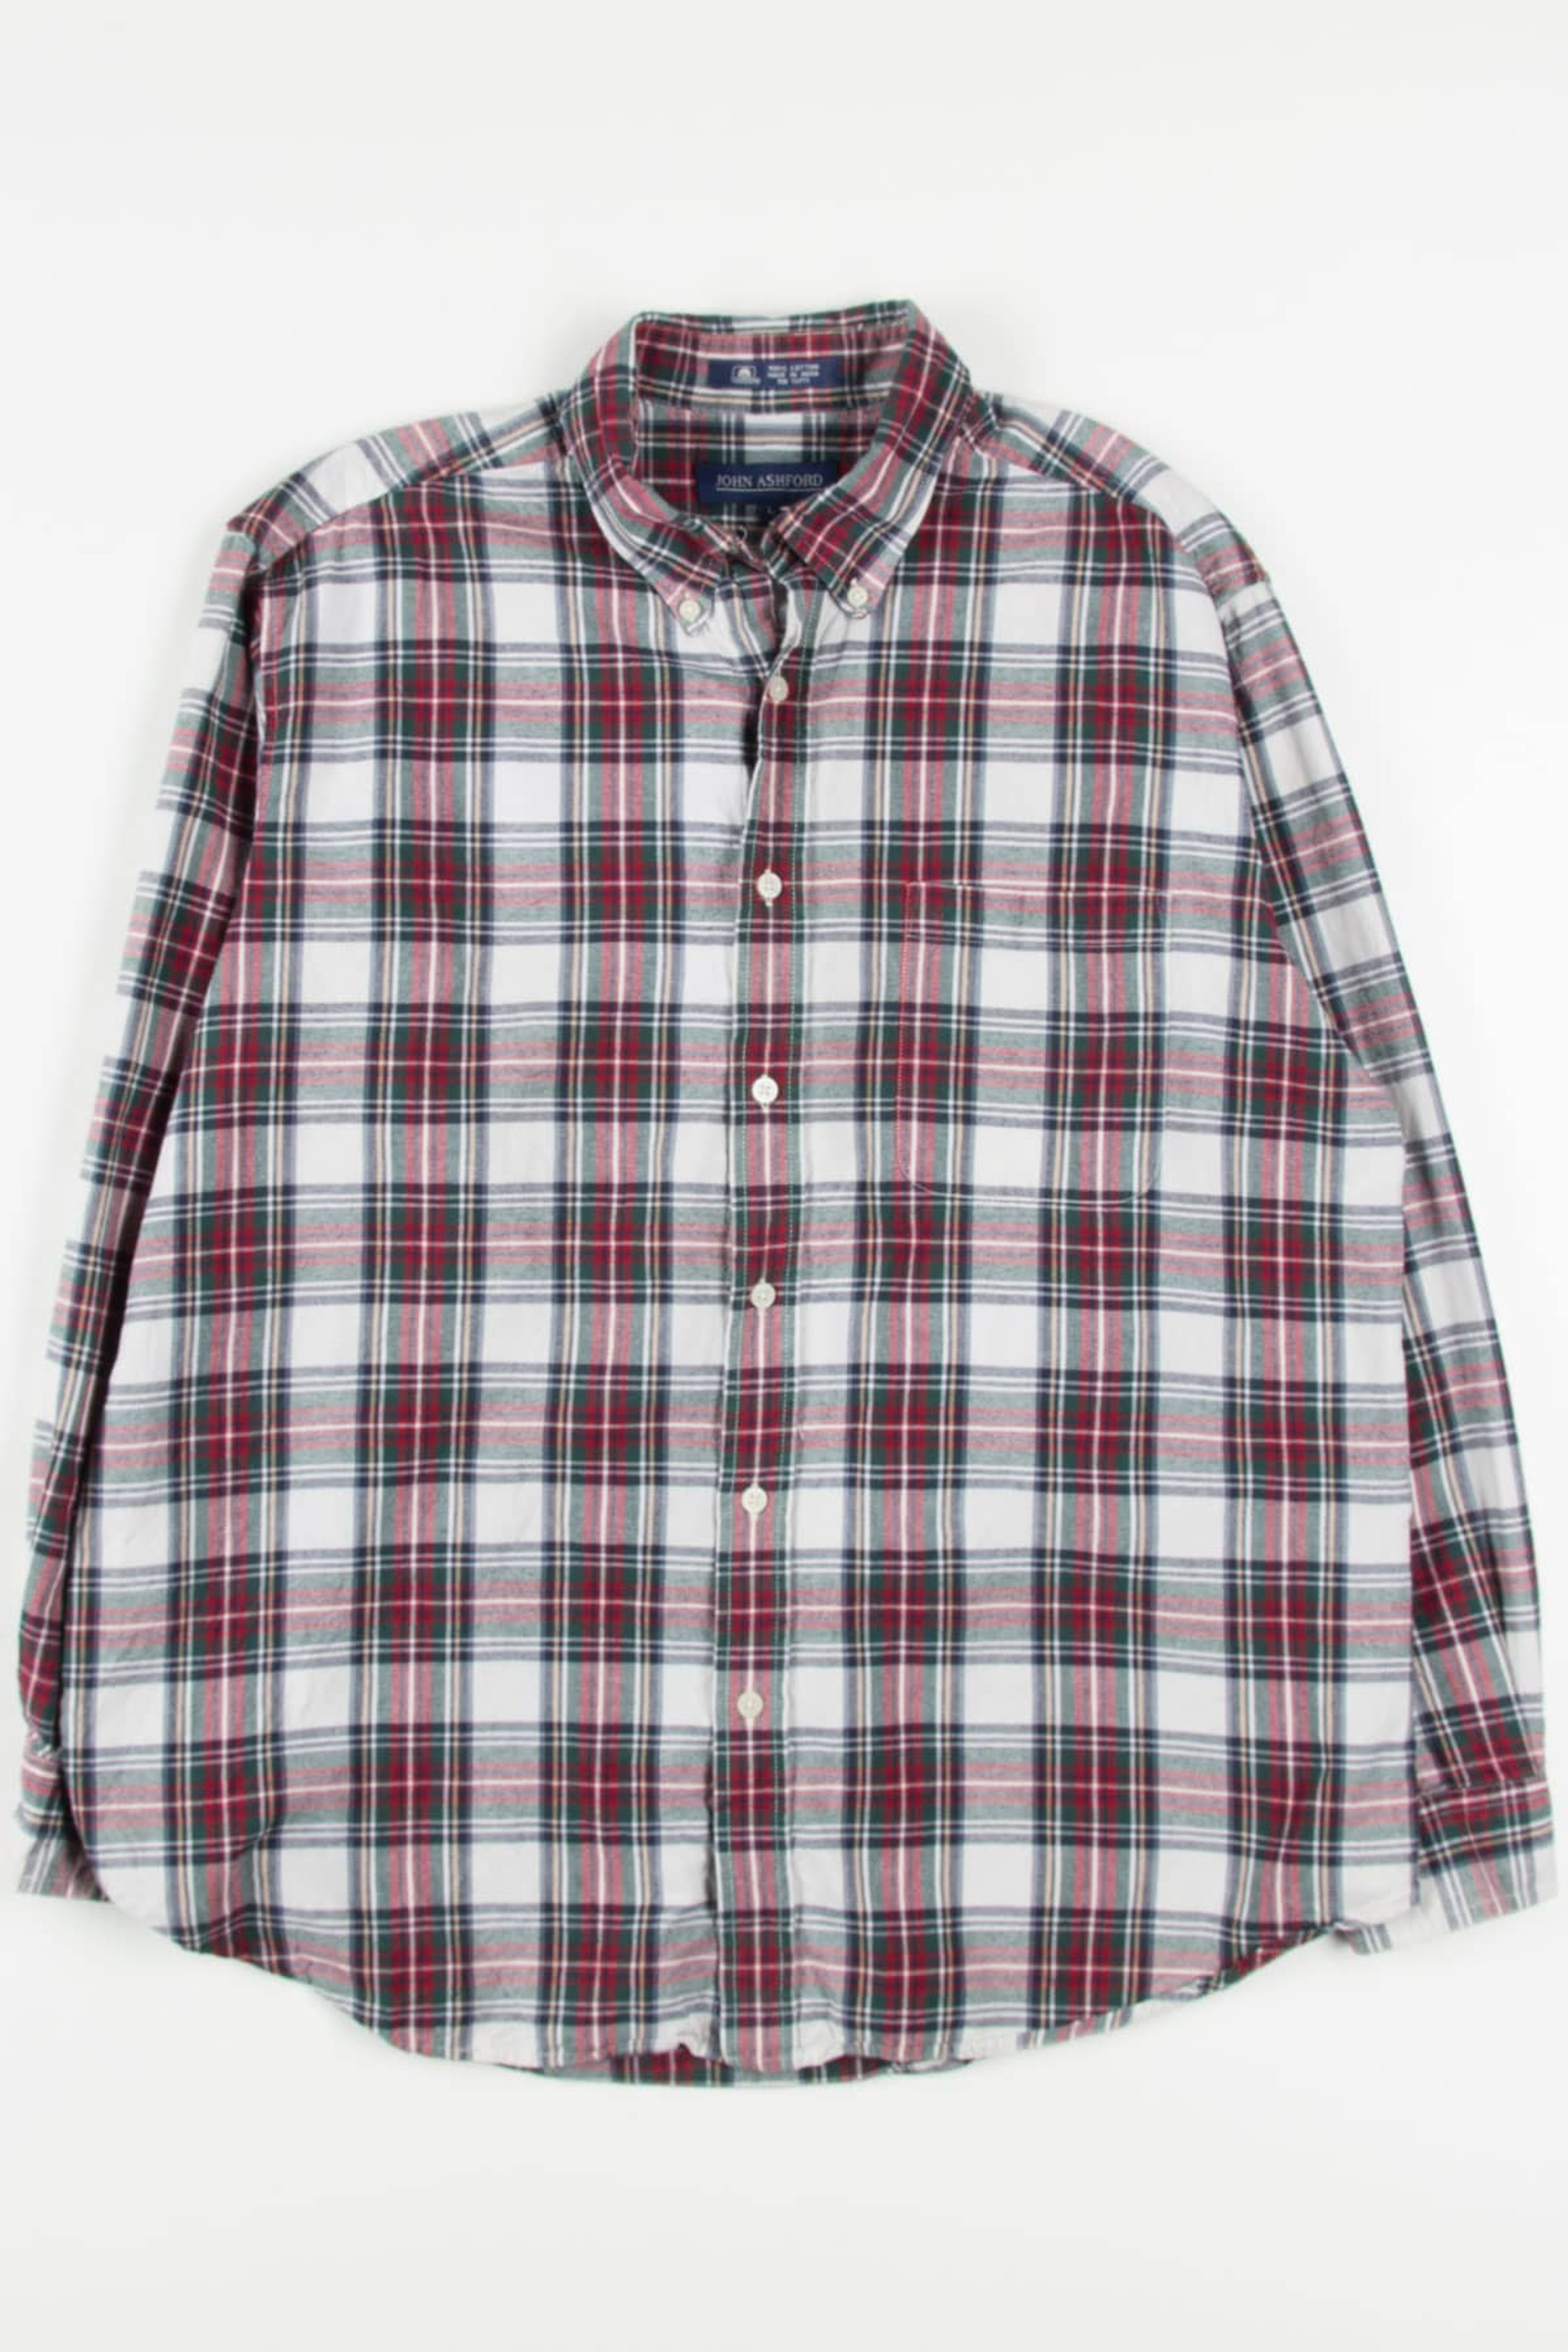 Vintage Molokai Flannel Shirt 4317 - Ragstock.com